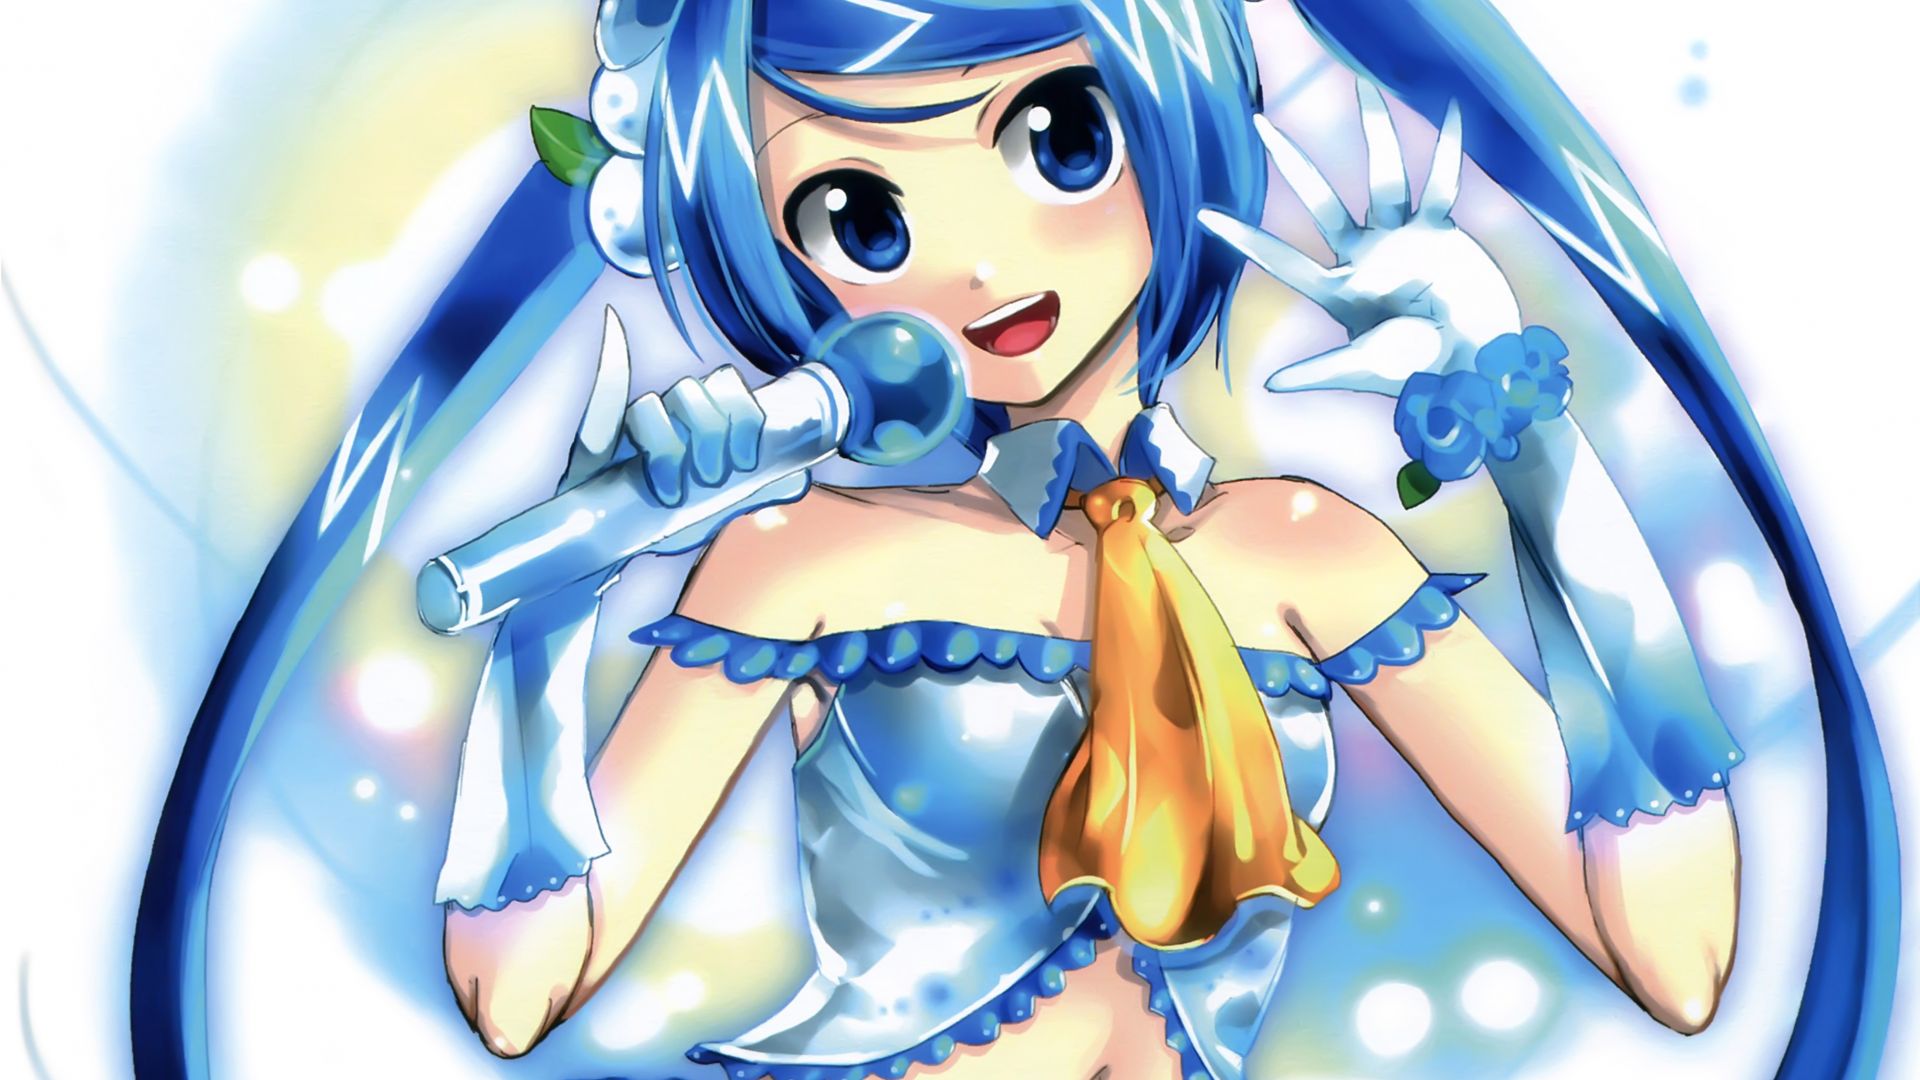 Wallpaper Blue hair anime girl, cute, sing, original